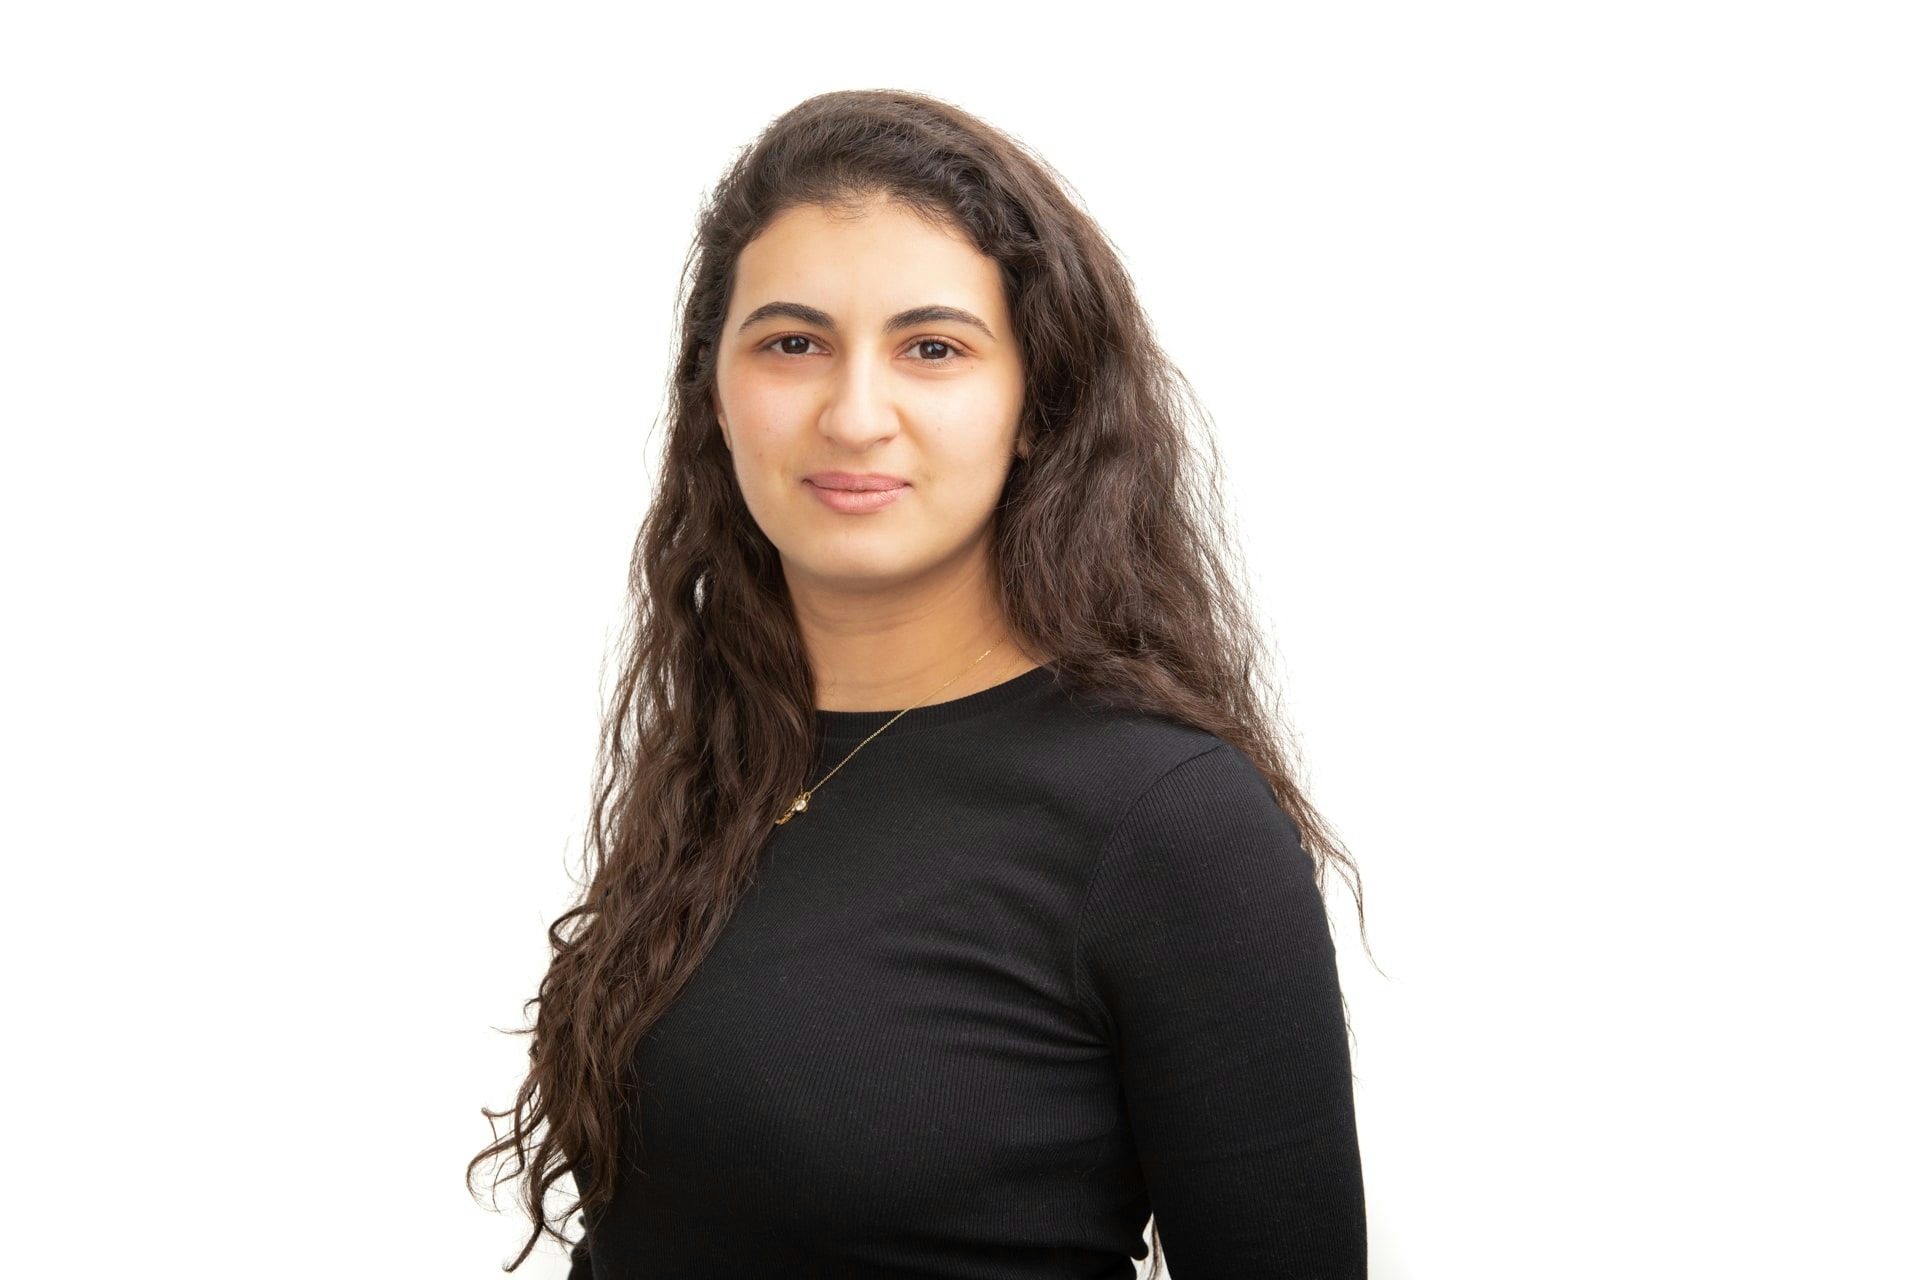 Zineb Ismaili